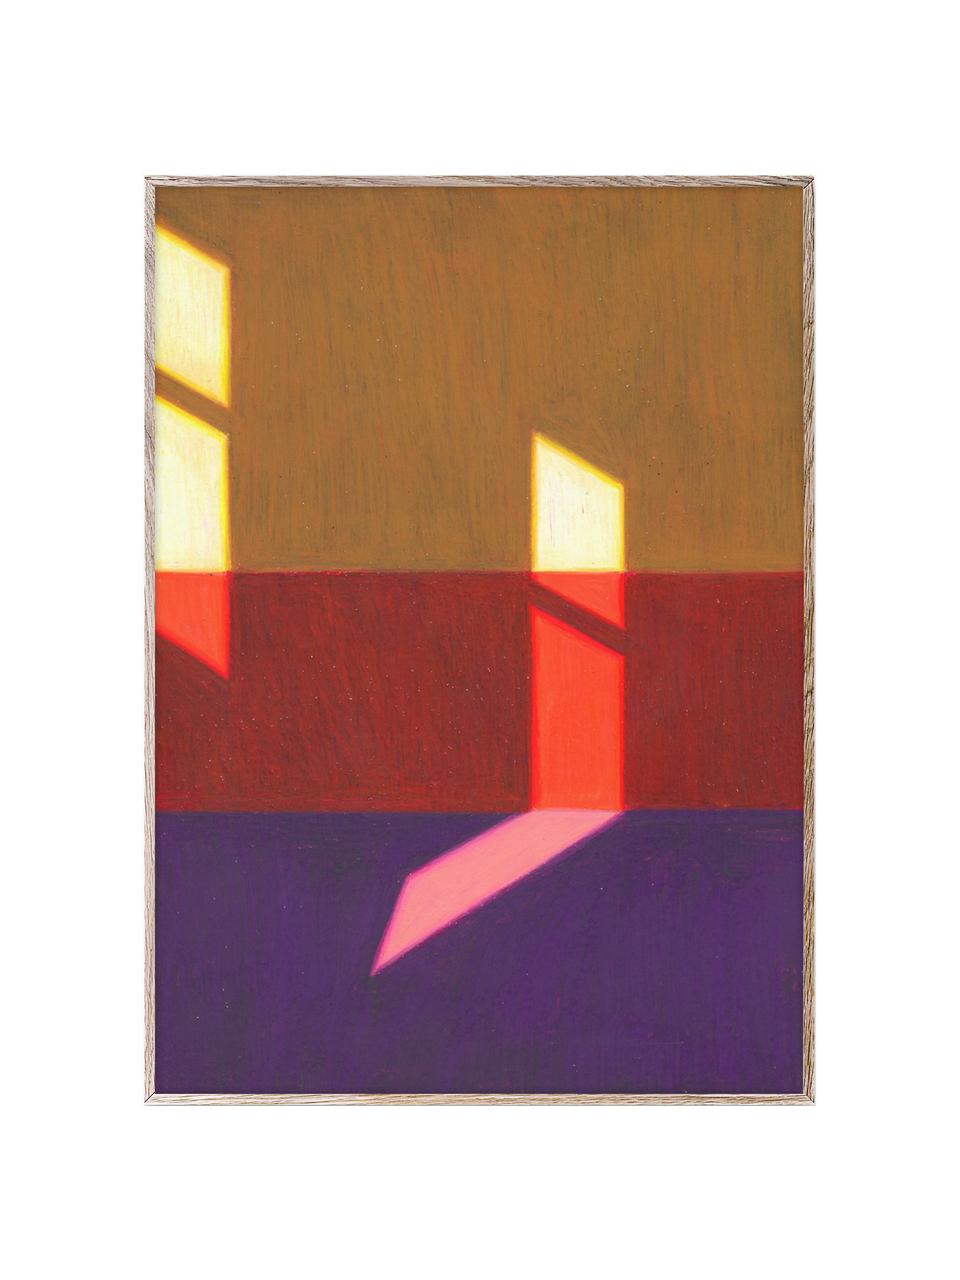 Plagát Les Vacances 02, 210 g matný papier Hahnemühle, digitálna tlač s 10 farbami odolnými voči UV žiareniu, Fialová, červená, žltá, Š 30 x V 40 cm